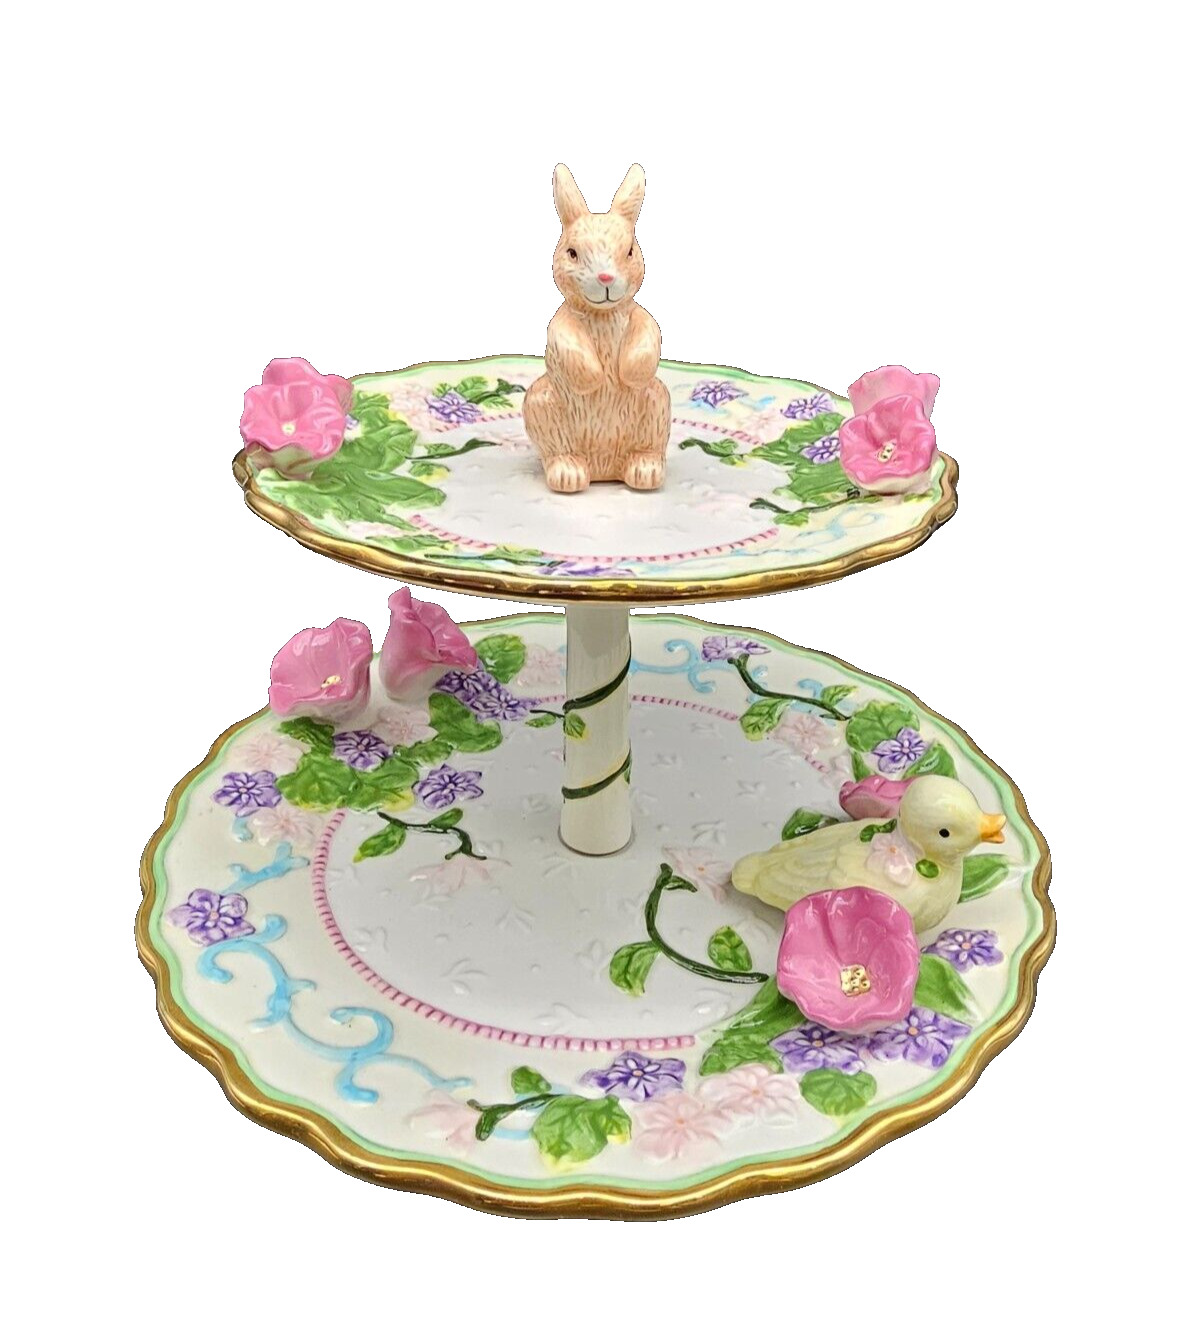 Vintage Avon Springtime 2 Tier Serving Tray Floral Bunny Duckling Ceramic